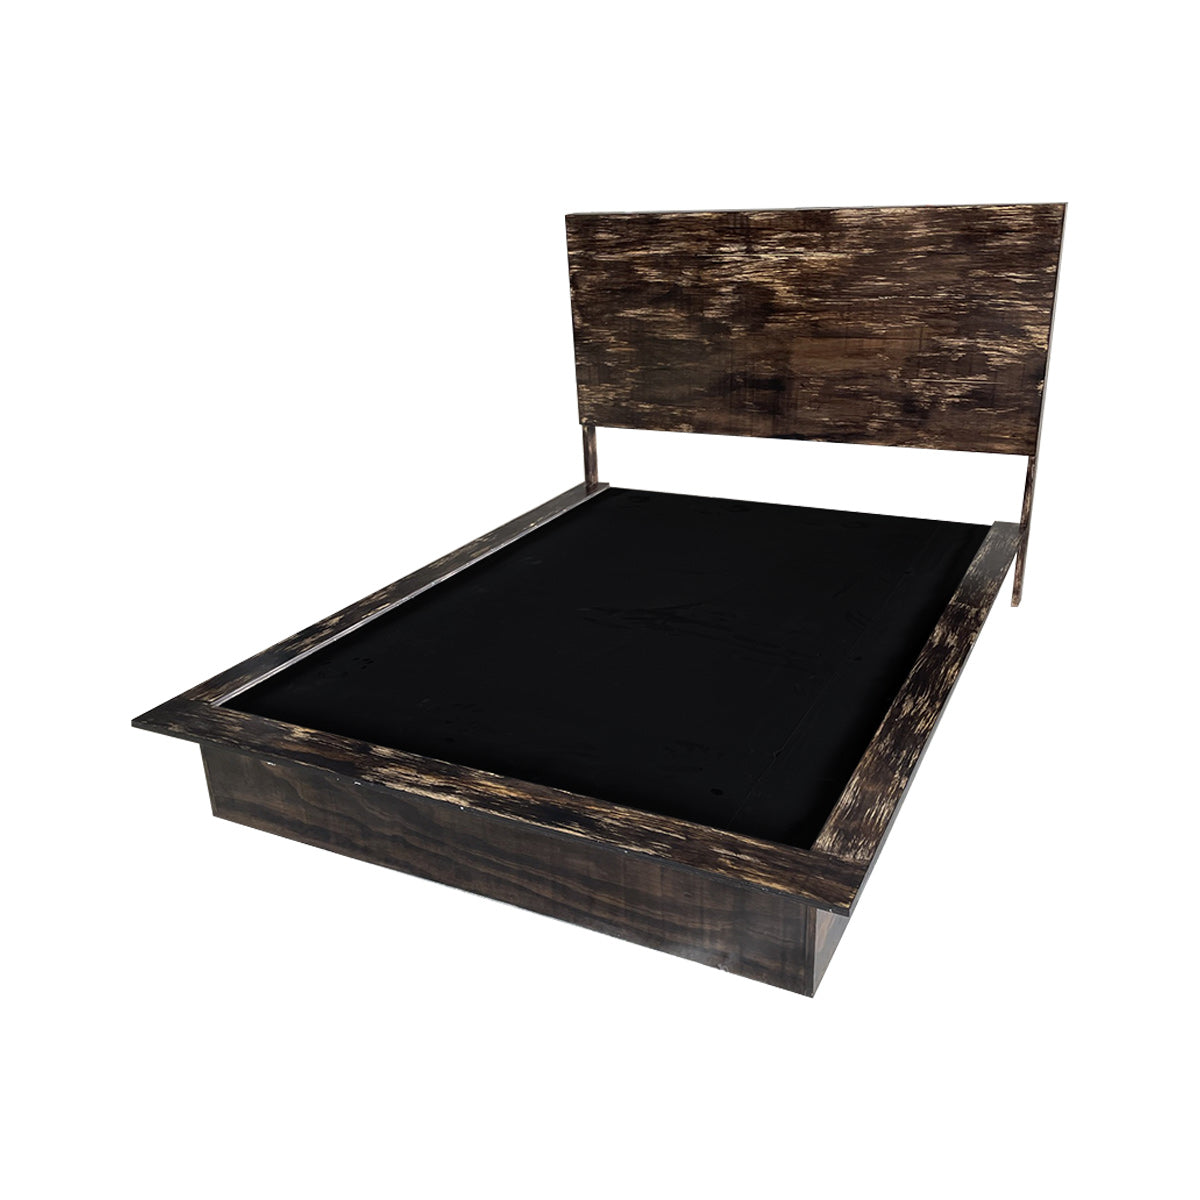 Recámara Lerida, base de cama y cabecera unidas en color obscuro y acabados en madera barnizada.